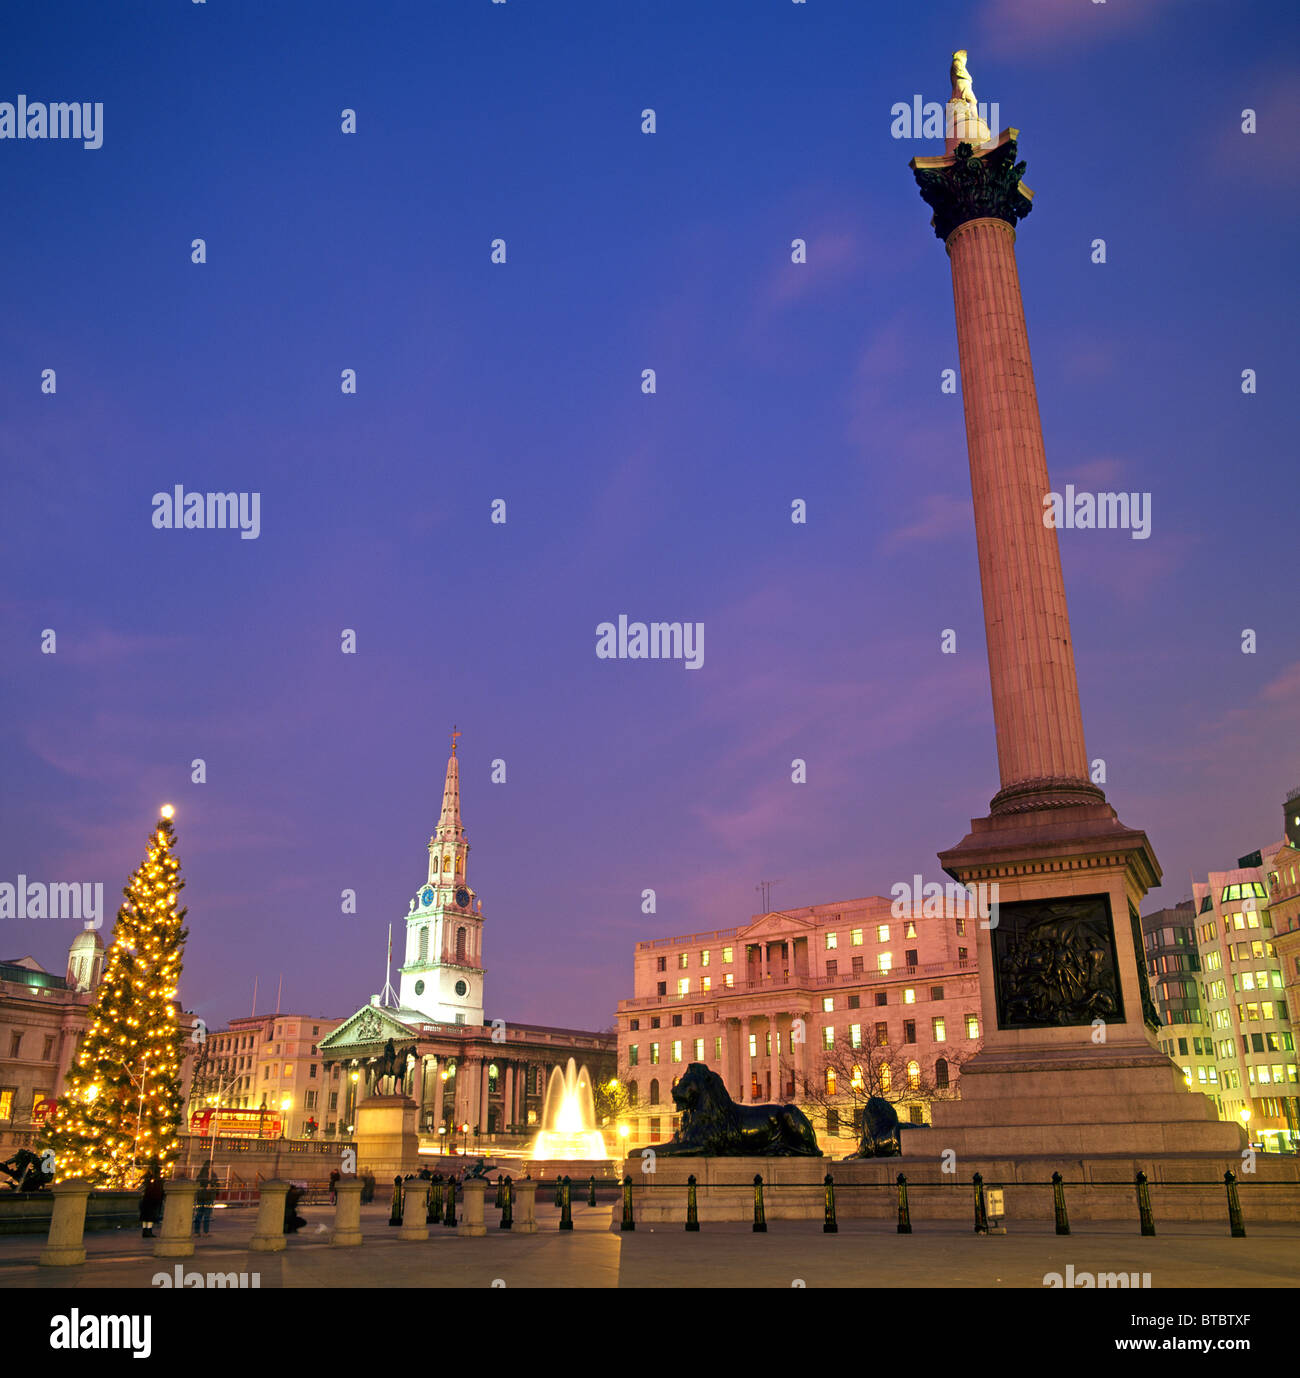 Trafalgar Square At Night London UK Europe Stock Photo